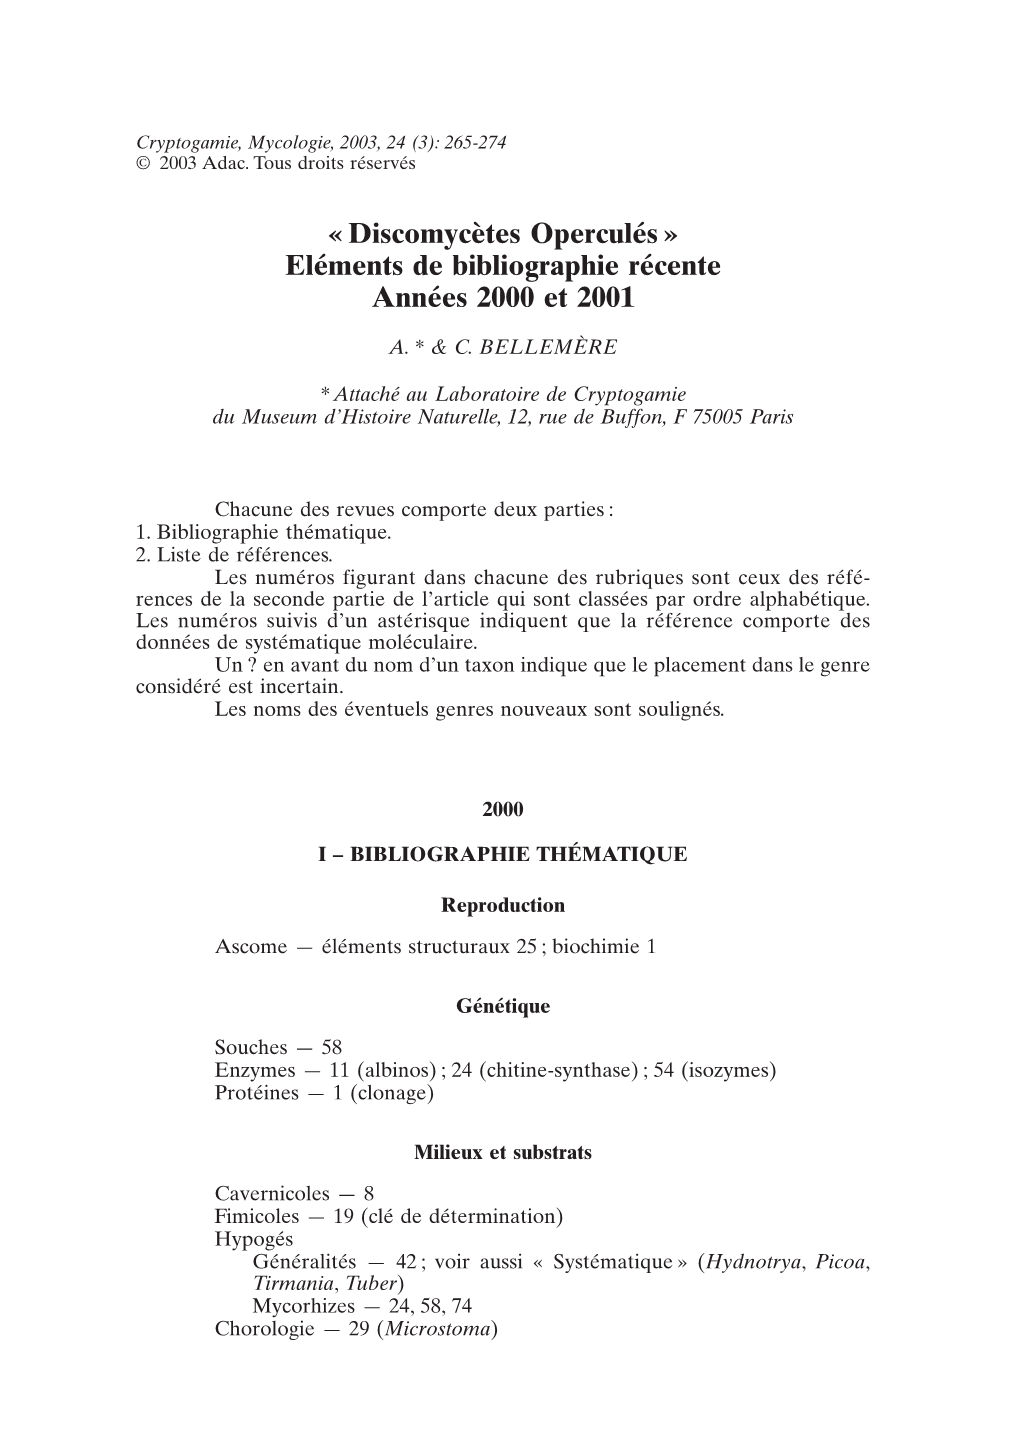 « Discomycètes Operculés » Eléments De Bibliographie Récente Années 2000 Et 2001